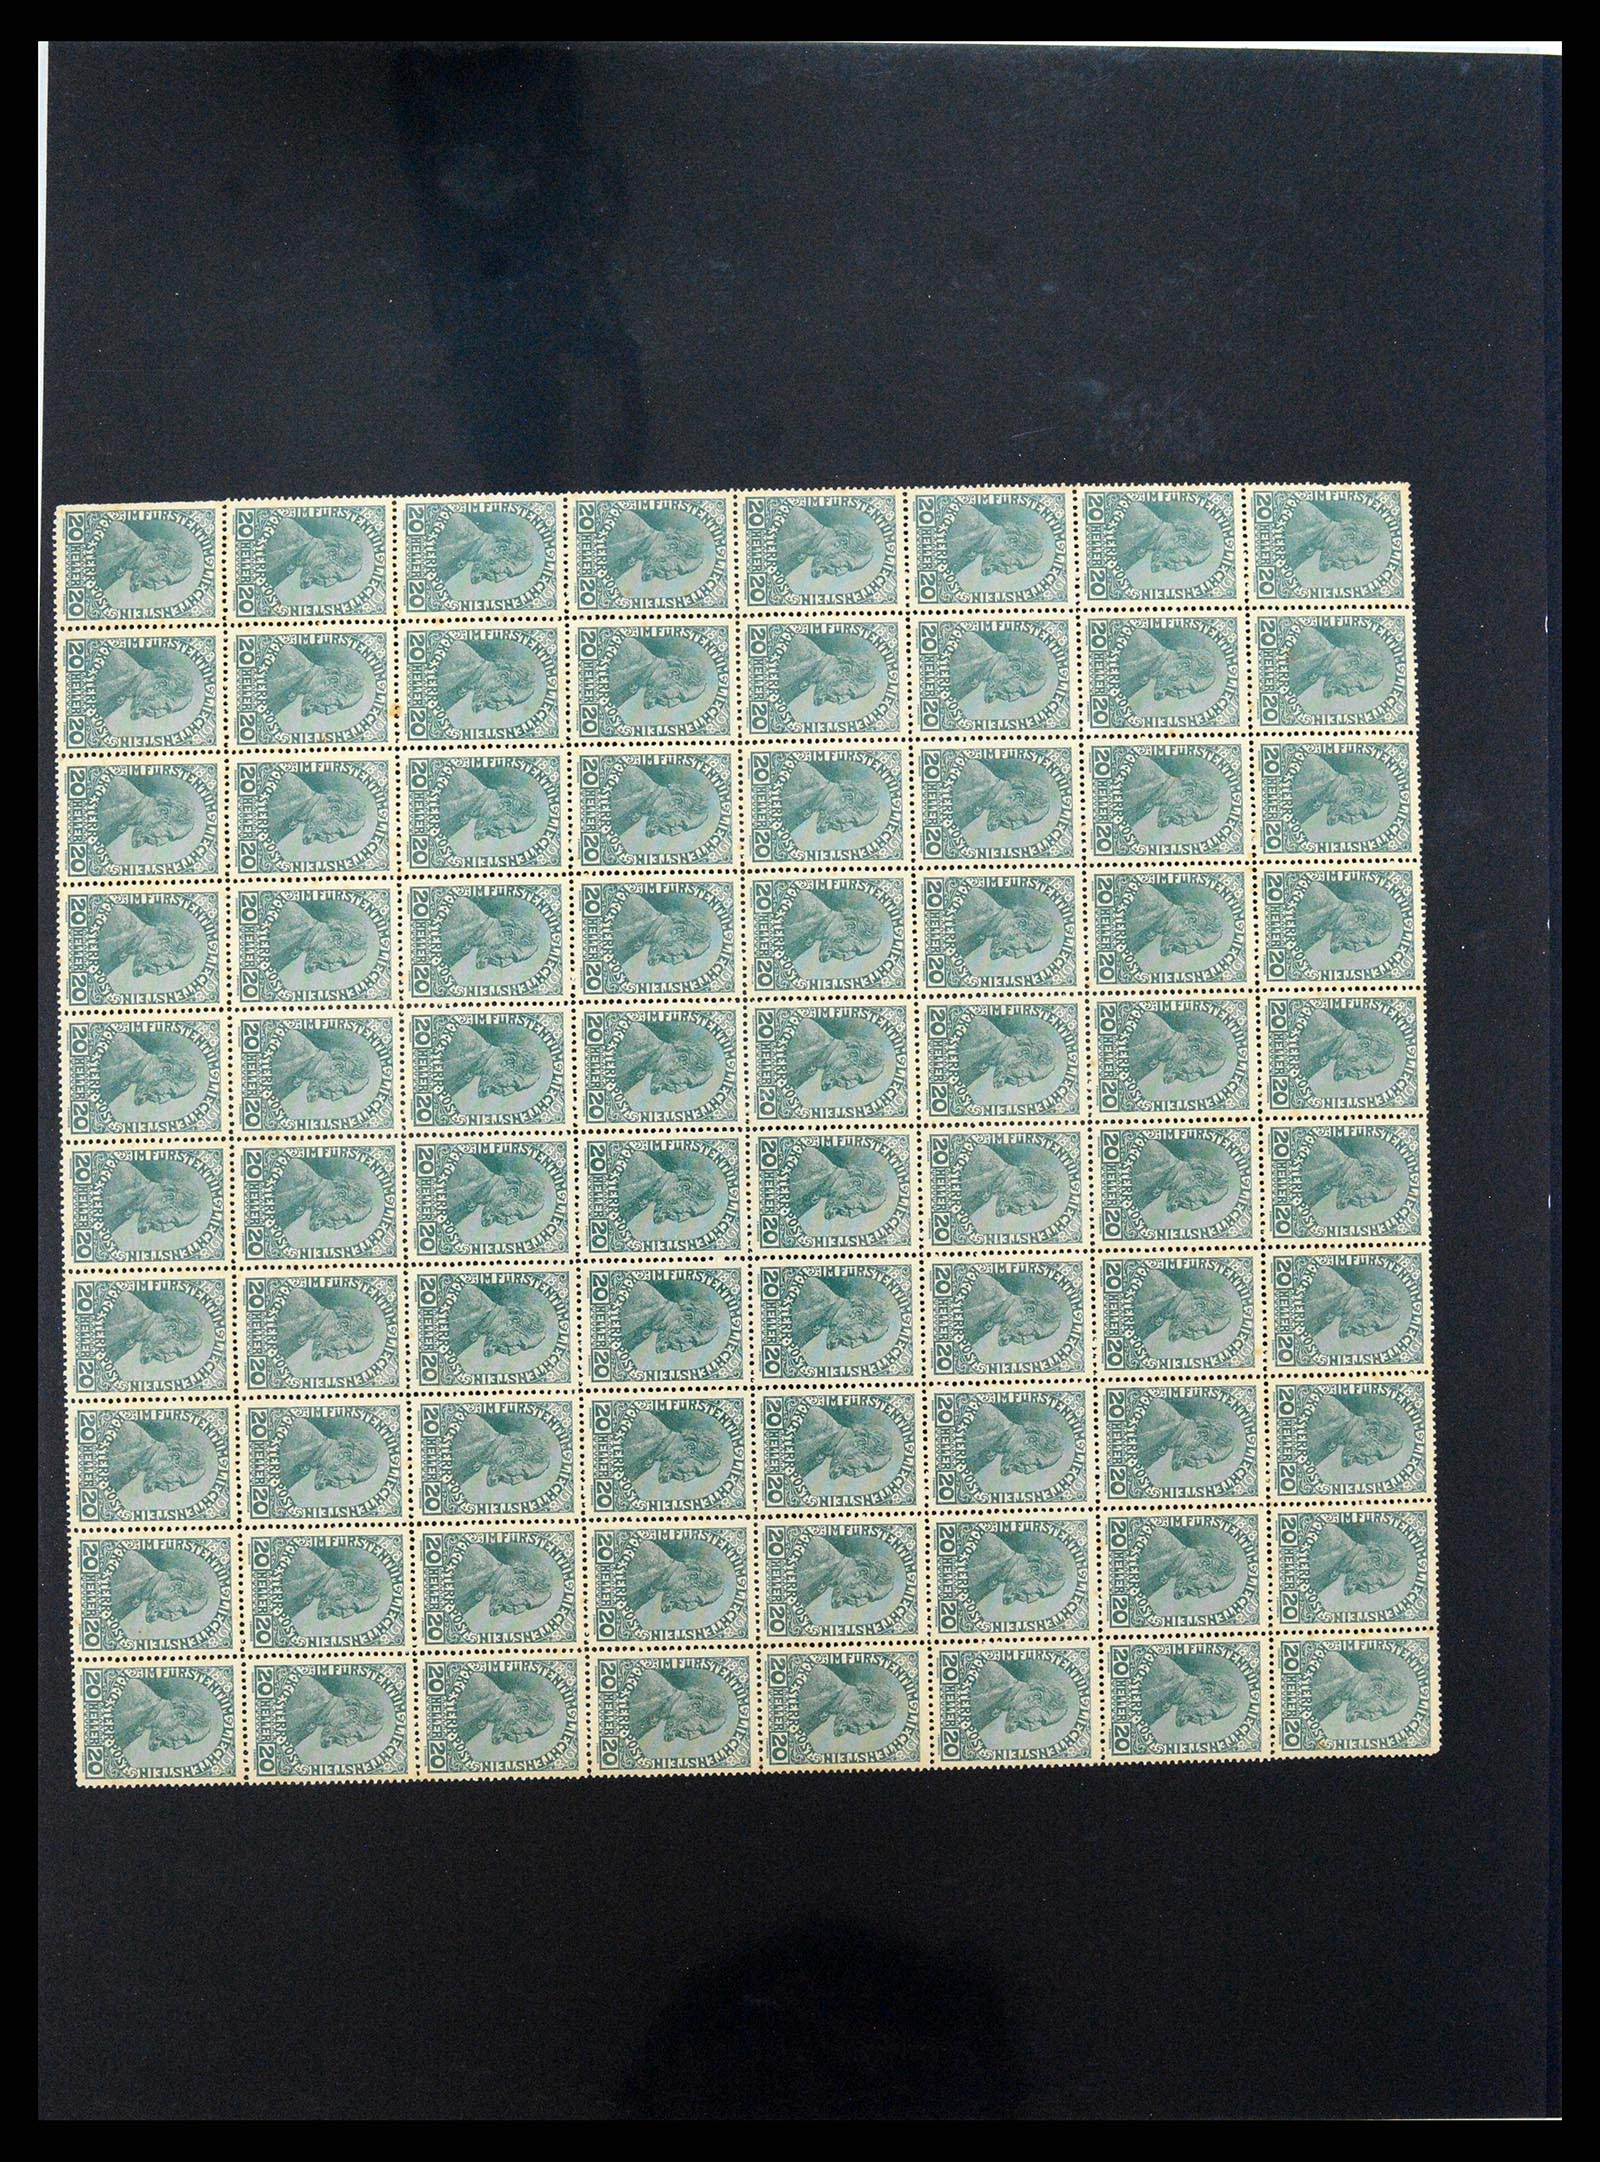 37150 1707 - Stamp collection 37150 Liechtenstein supercollection 1912-1962.